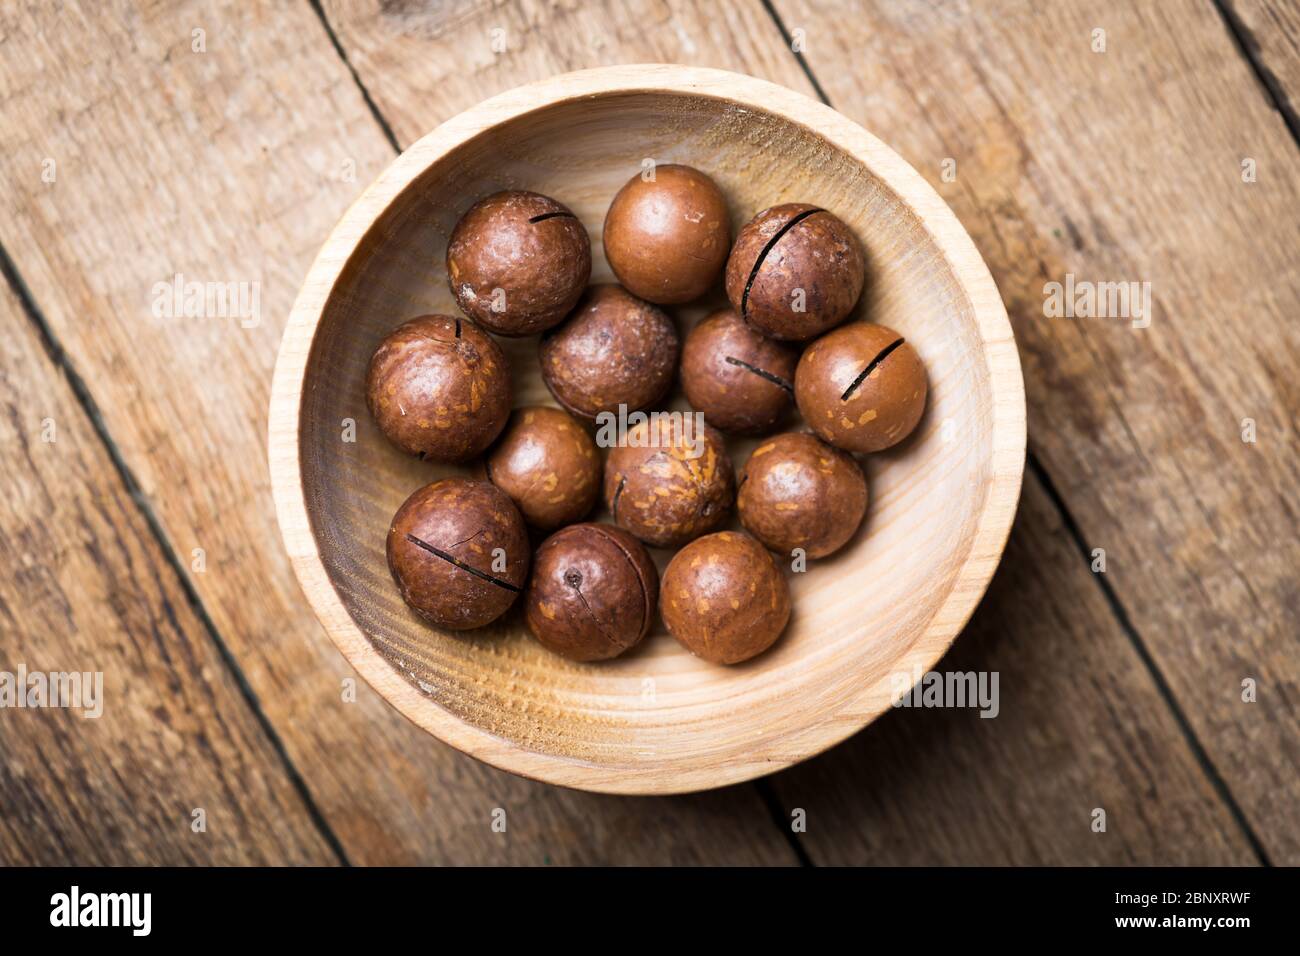 Noix de macadamia biologiques séchées dans un bol en bois. Prise de vue macro studio. Photographie alimentaire Banque D'Images